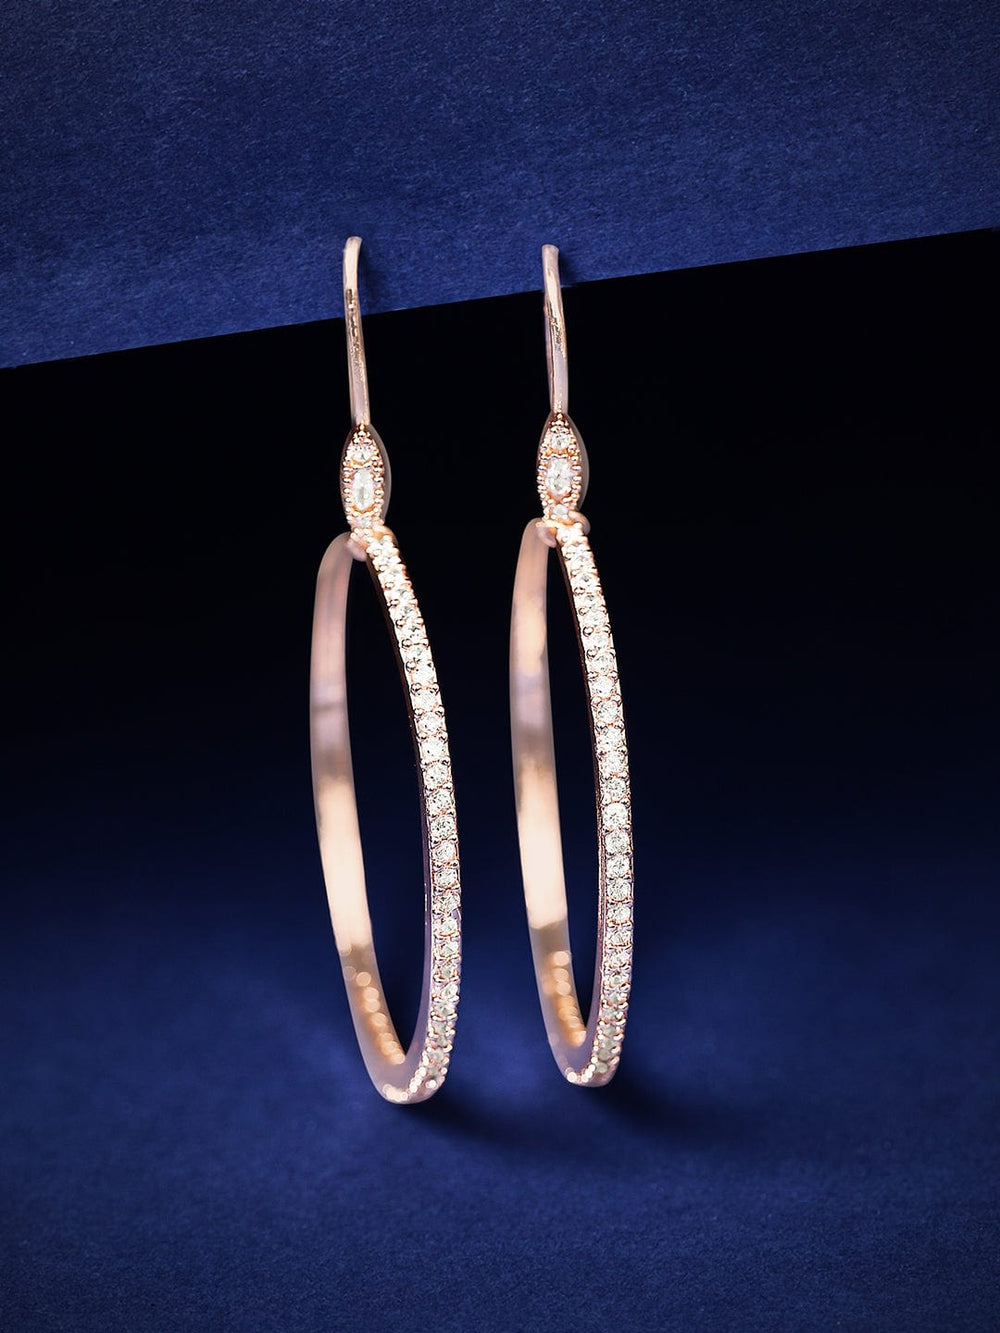 Rubans Rose Gold -Plated Circular Hoop Earrings Earrings